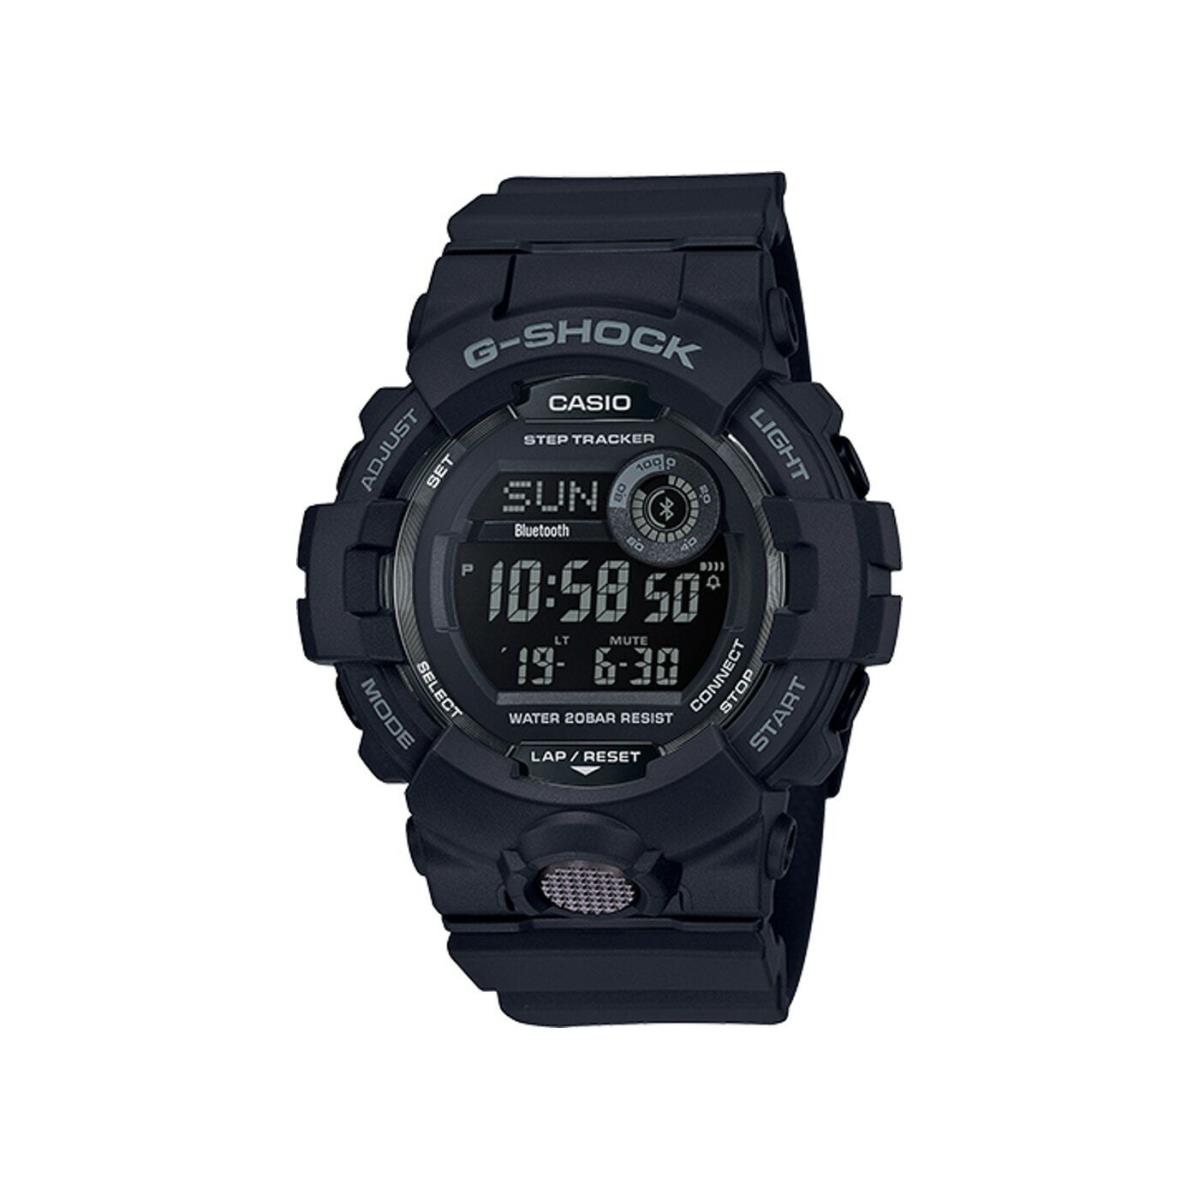 Casio G-shock Bluetooth Digital Watch Matte Black Resin GBD-800-1B / GBD800-1B